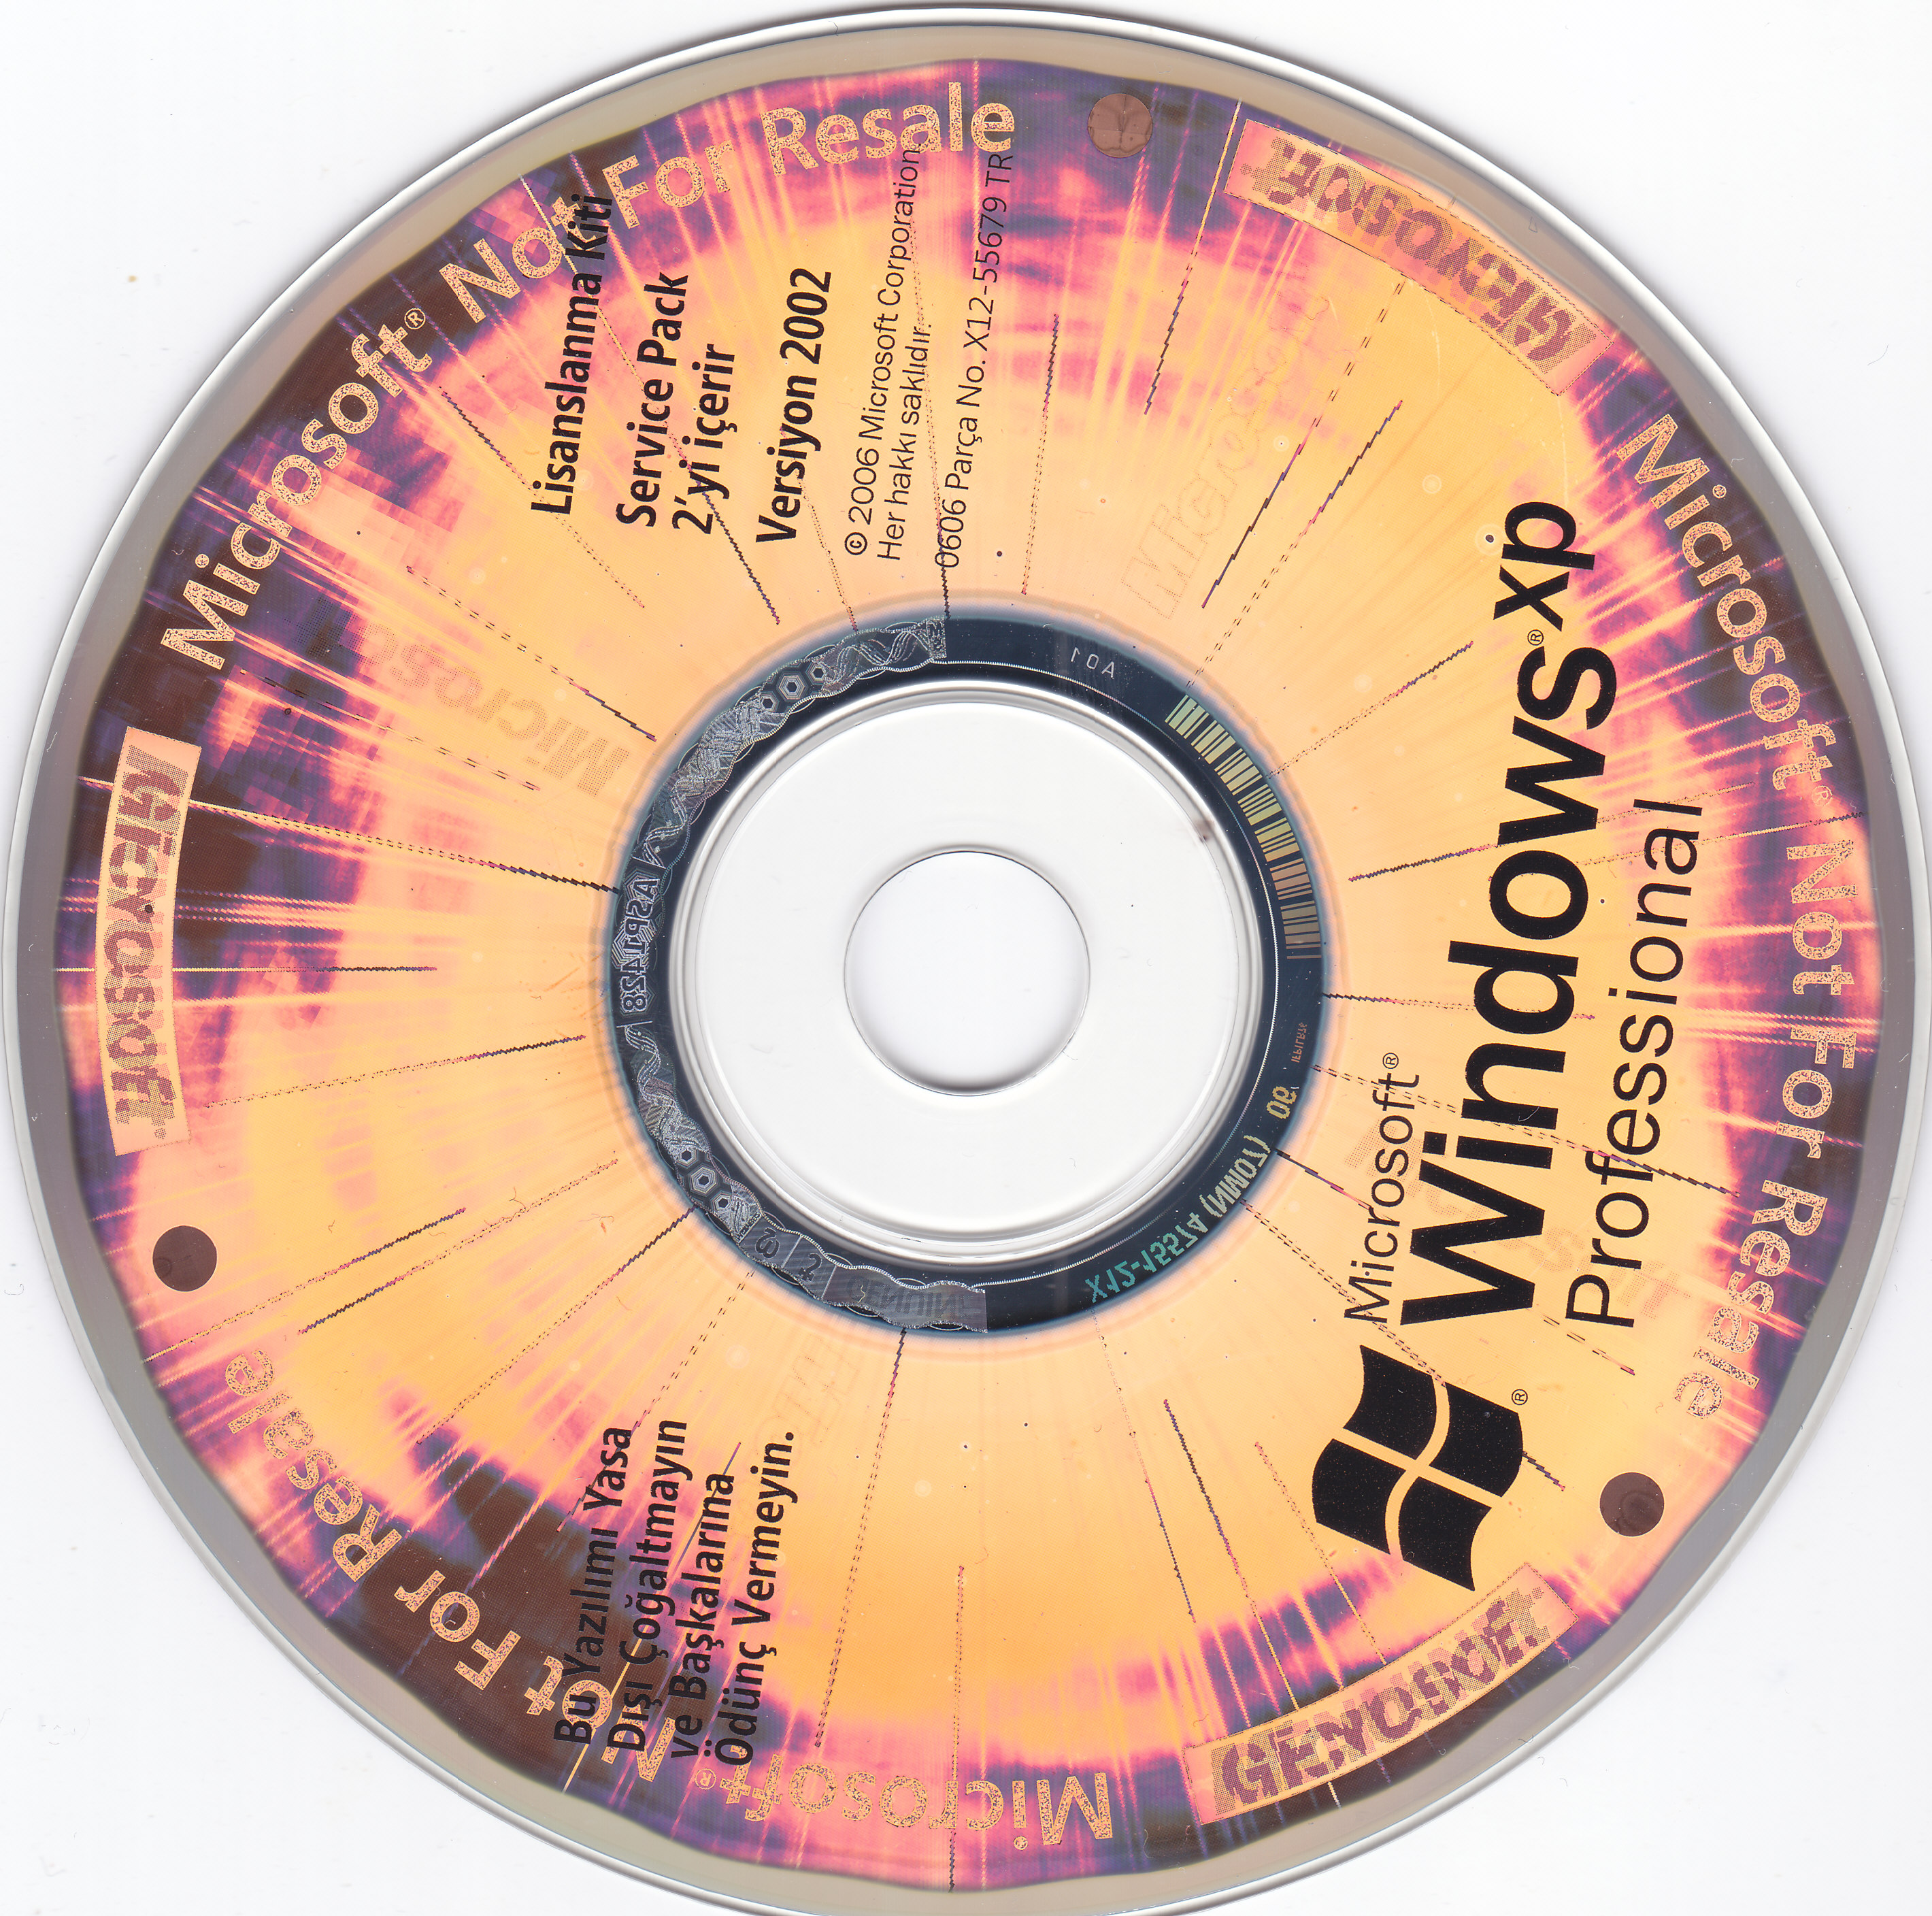 Nuevo Y Sellado! Microsoft Windows XP Professional SP2 Pro-OEM versión 2002 